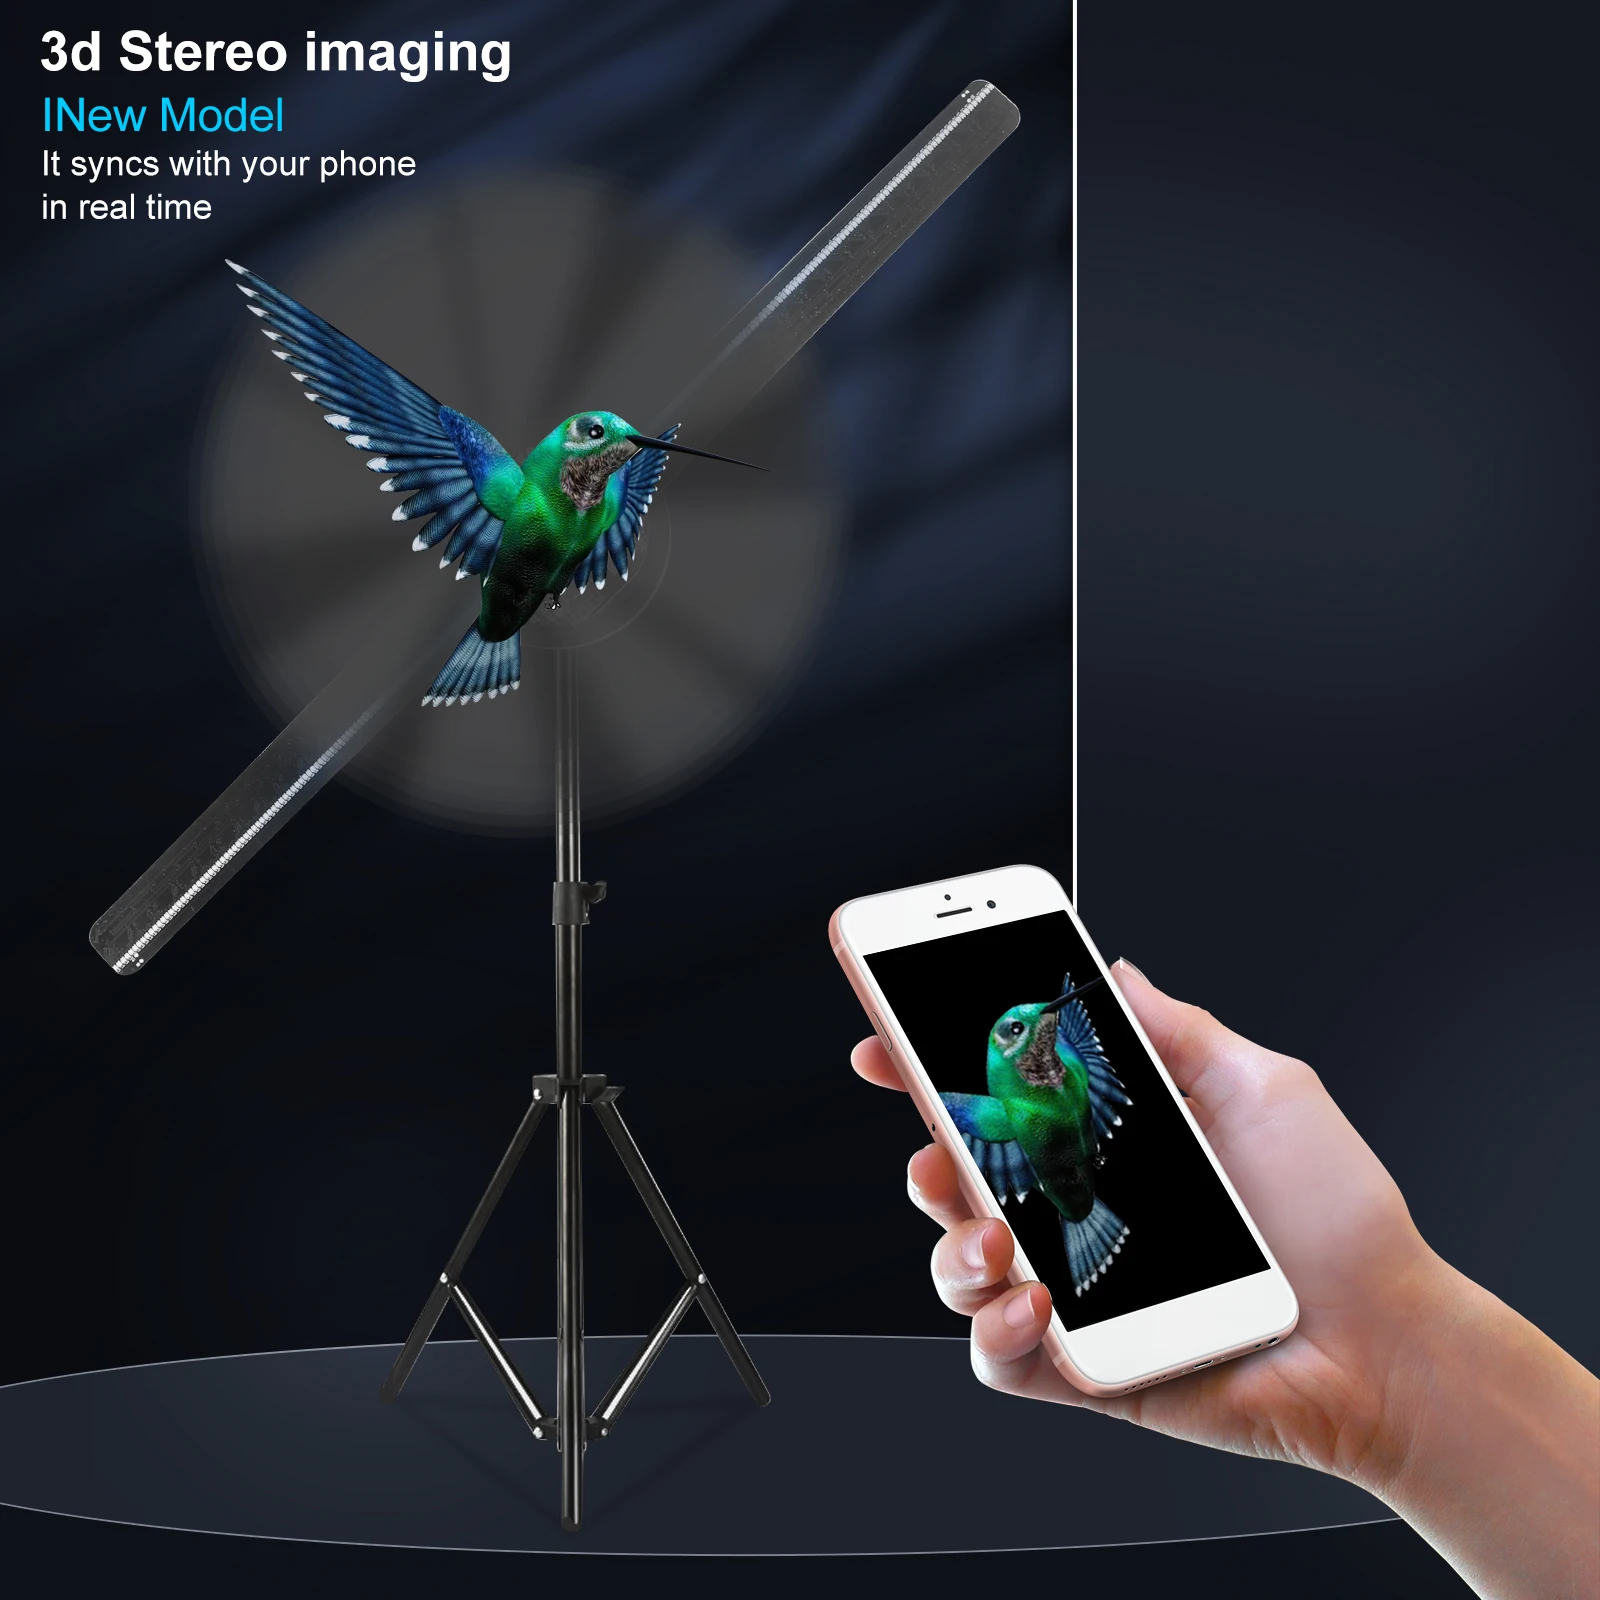 

Голографический 3D проектор Naked Eye для рекламы, 42 см вентилятор, светодиодный Wi-Fi голографический плеер с поддержкой изображения, видео, аудио дисплея